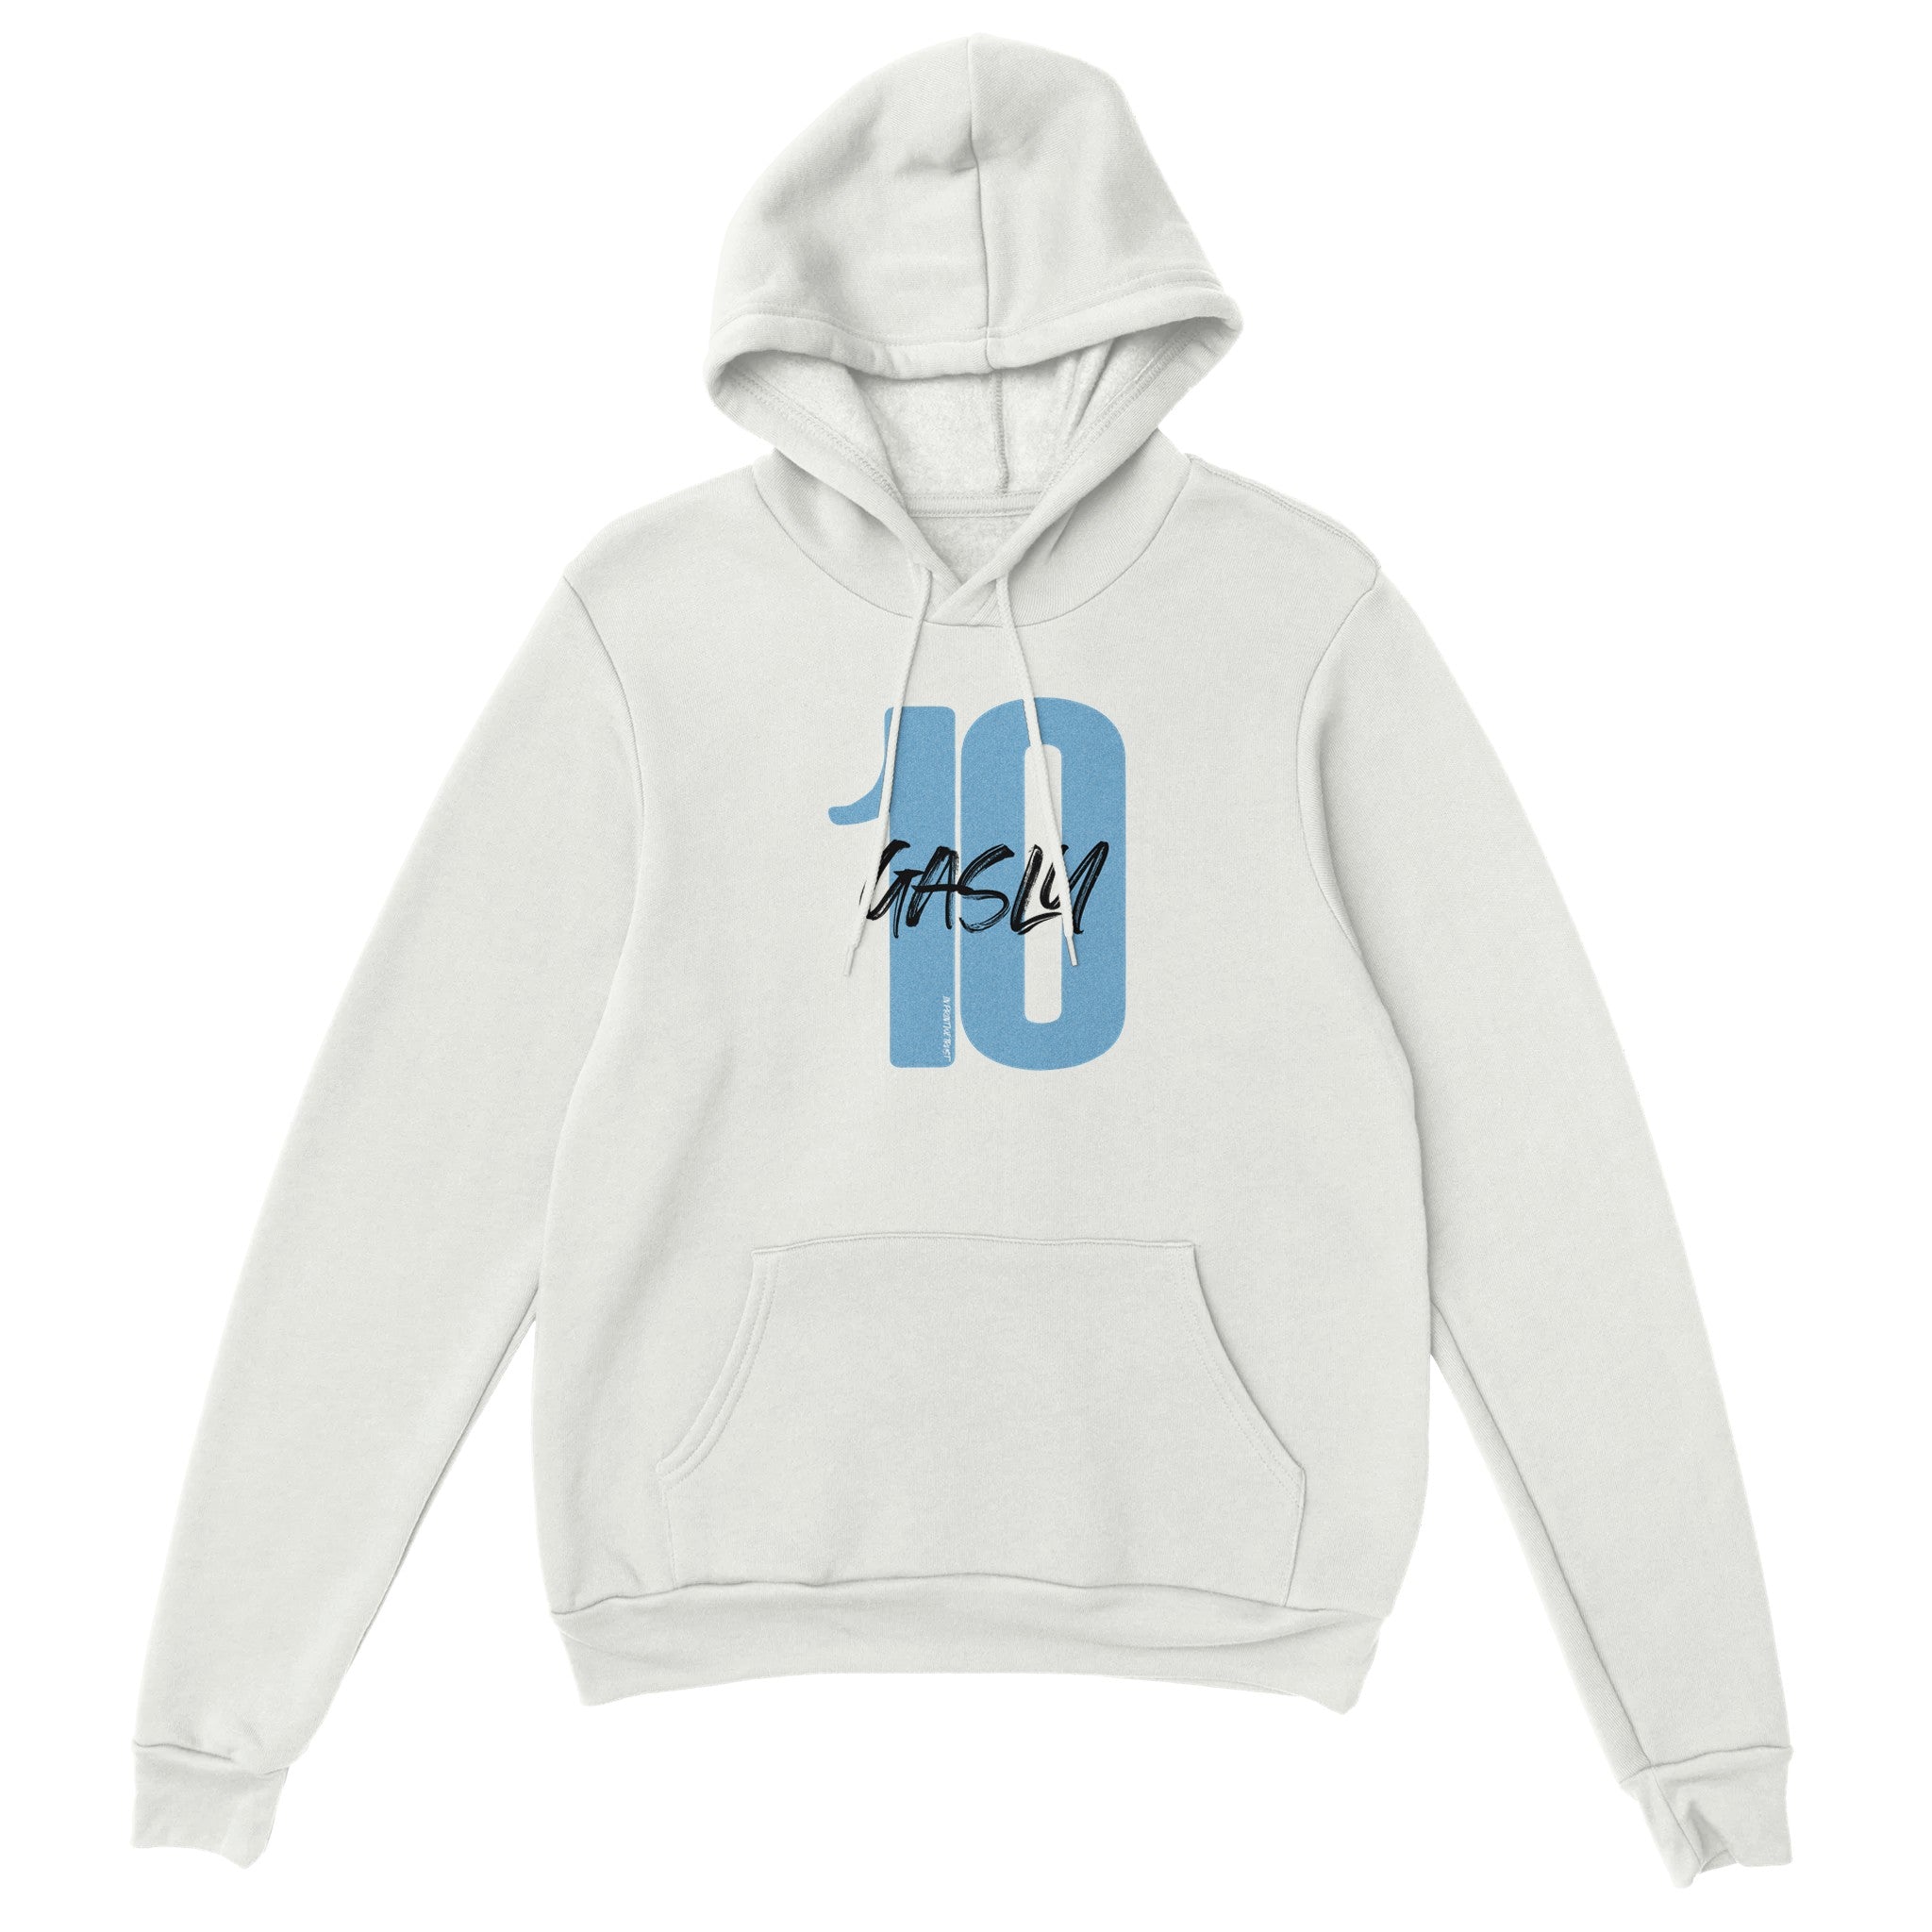 'Gasly 10' hoodie - In Print We Trust